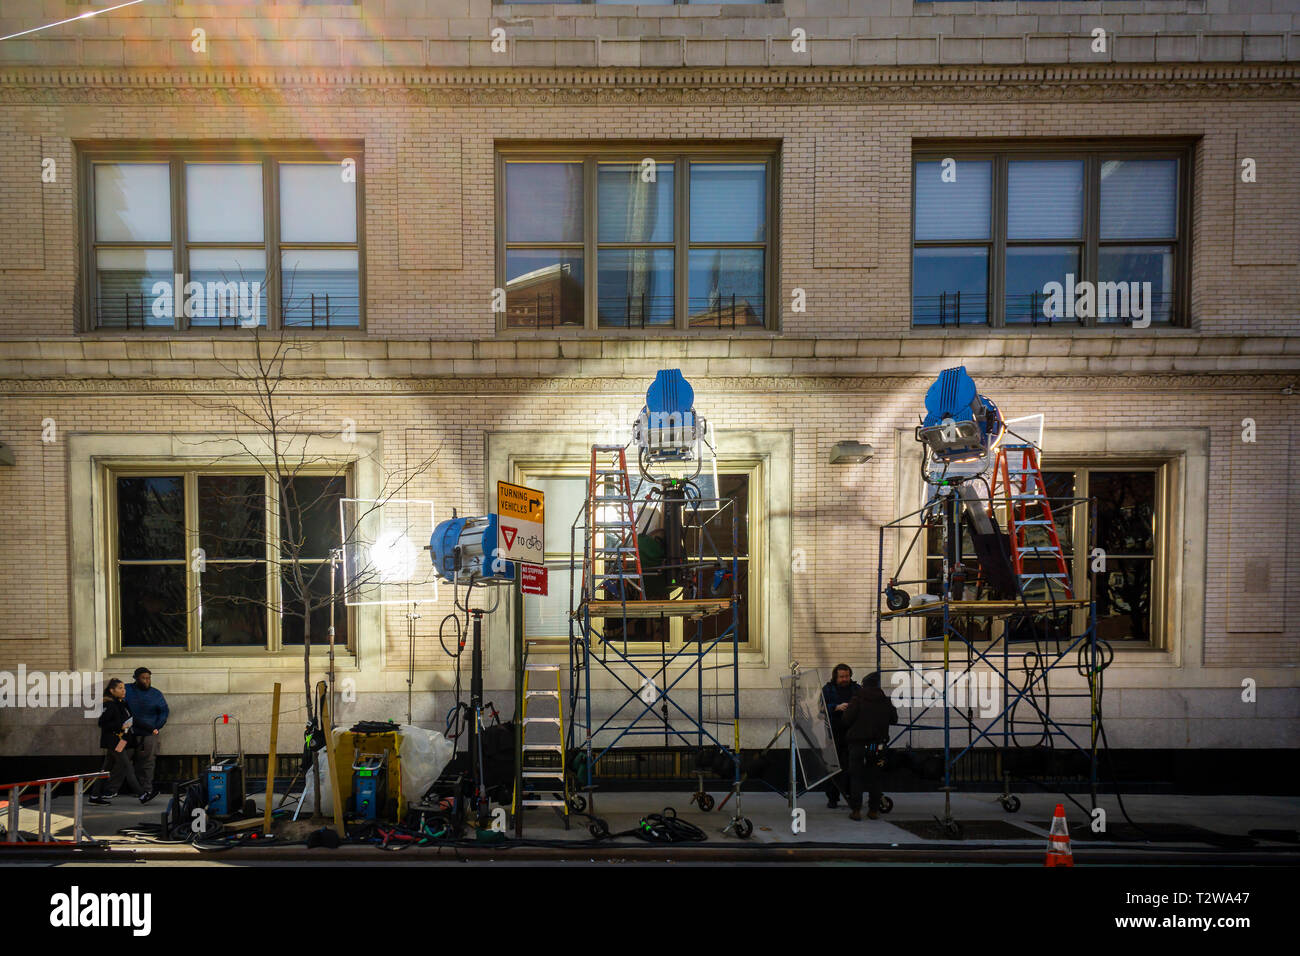 Une scène d'éclairage de l'intérieur de l'extérieur du bâtiment Heywood residence dans le quartier de Chelsea, New York le Mercredi, Avril 3, 2019. (Â© Richard B. Levine) Banque D'Images